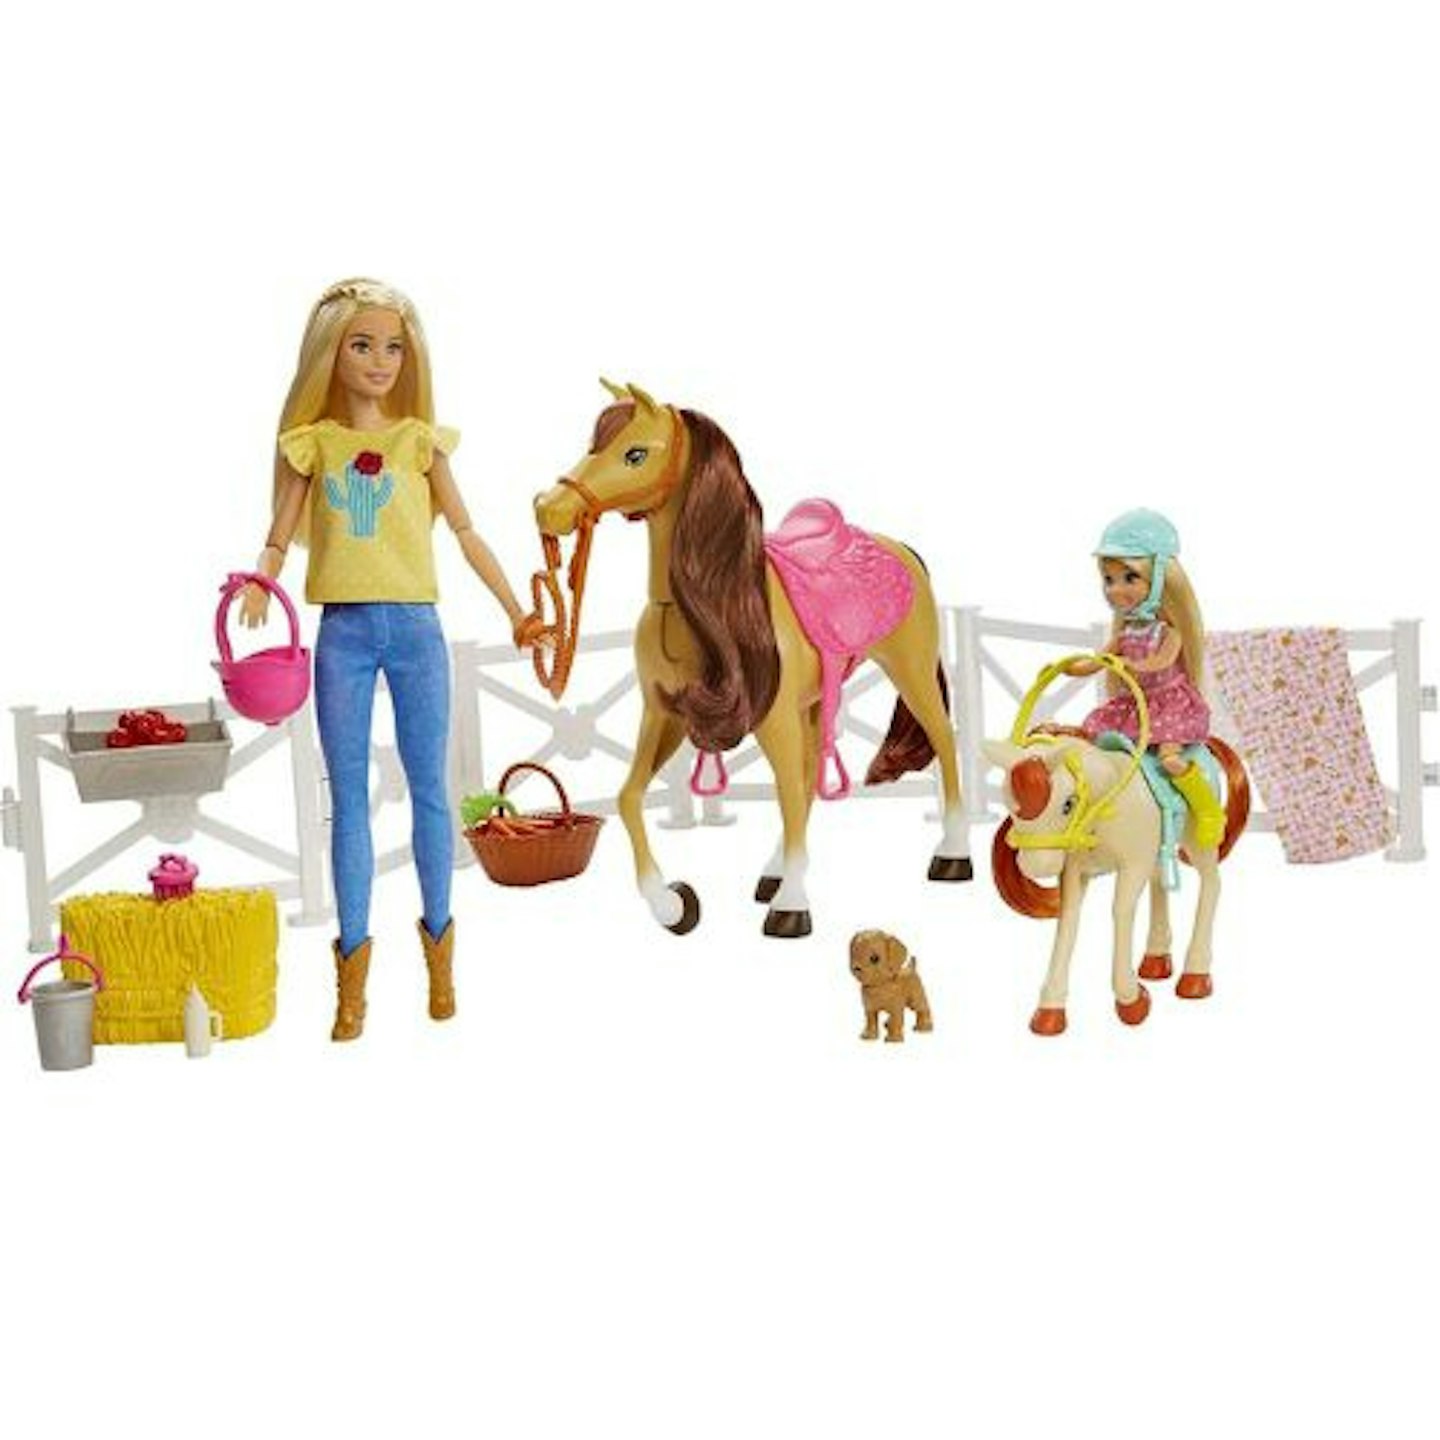  BARBIE Barbie Hugs n Horses Dolls with Barbie and Chelsea Blonde Dolls